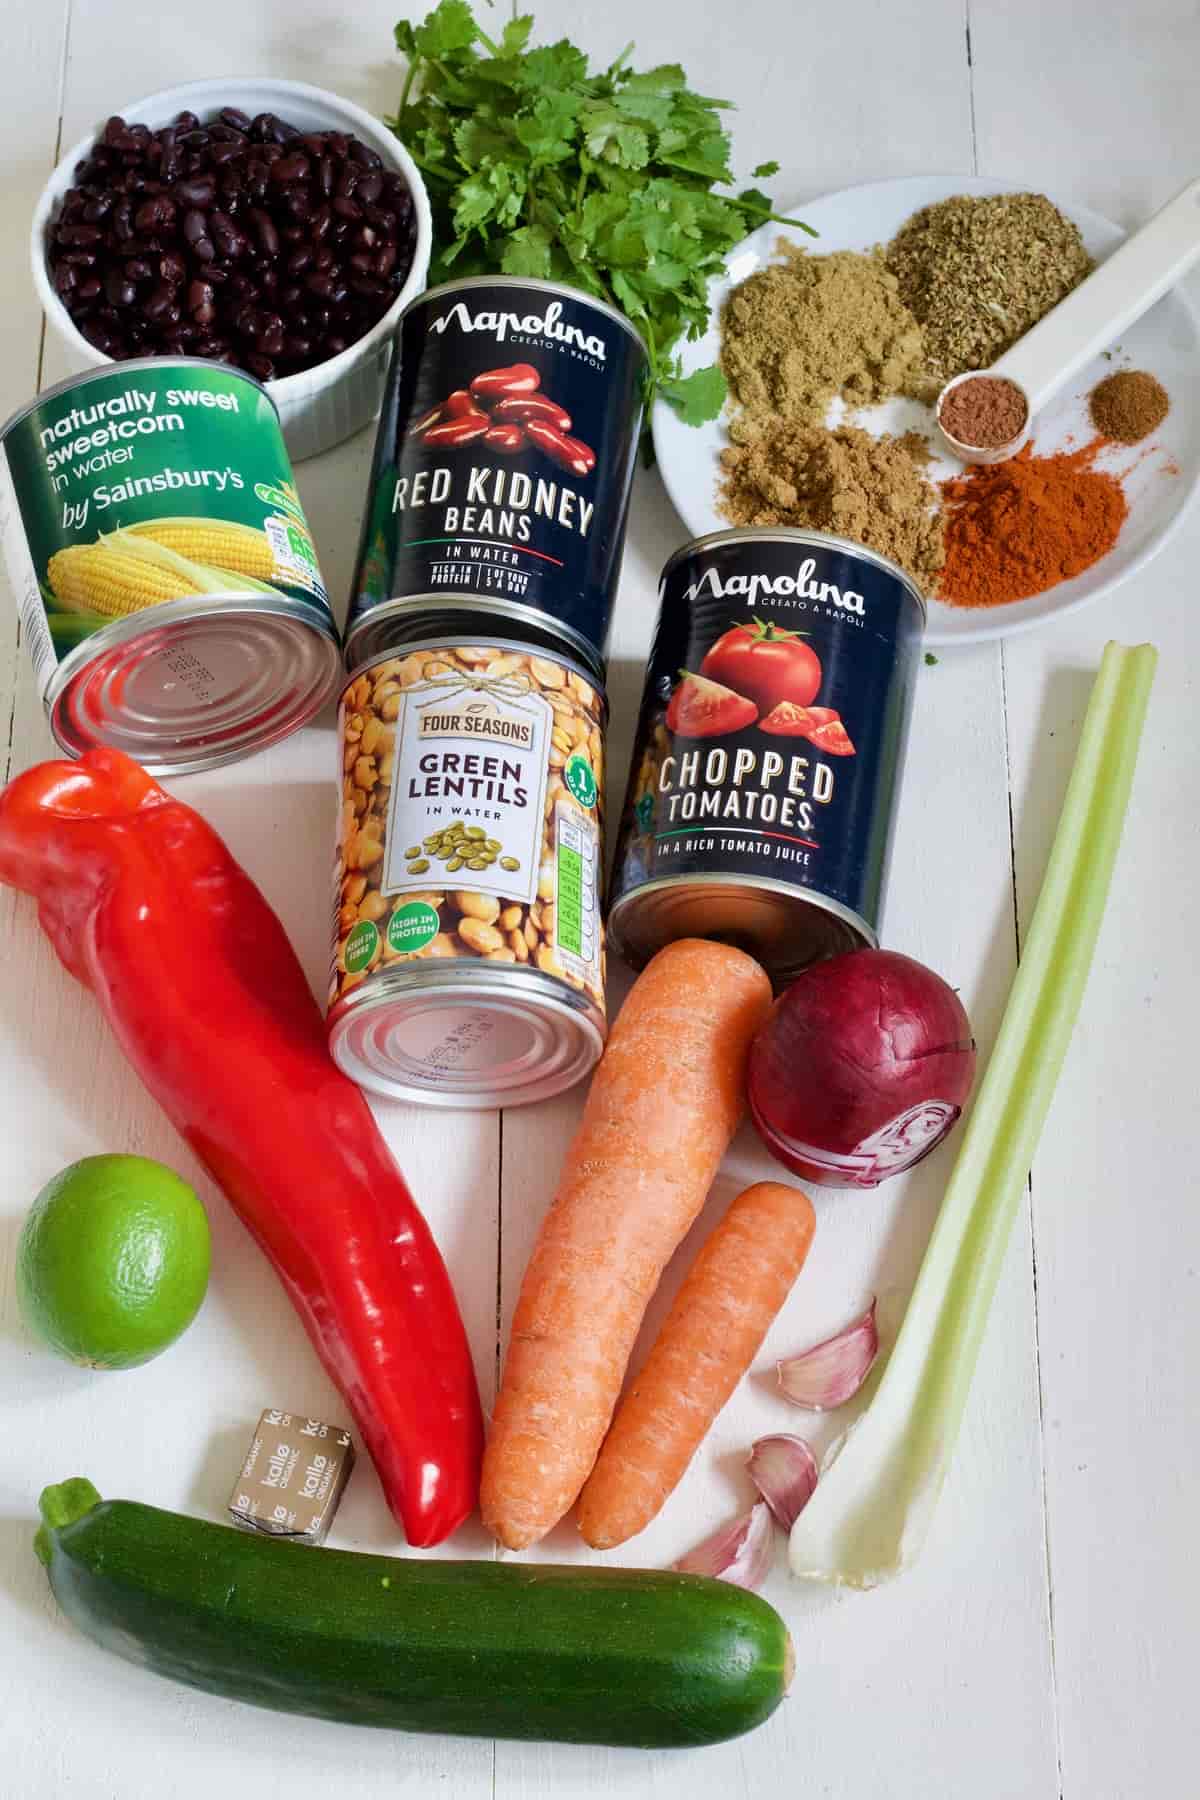 Ingredients for making vegan chilli.